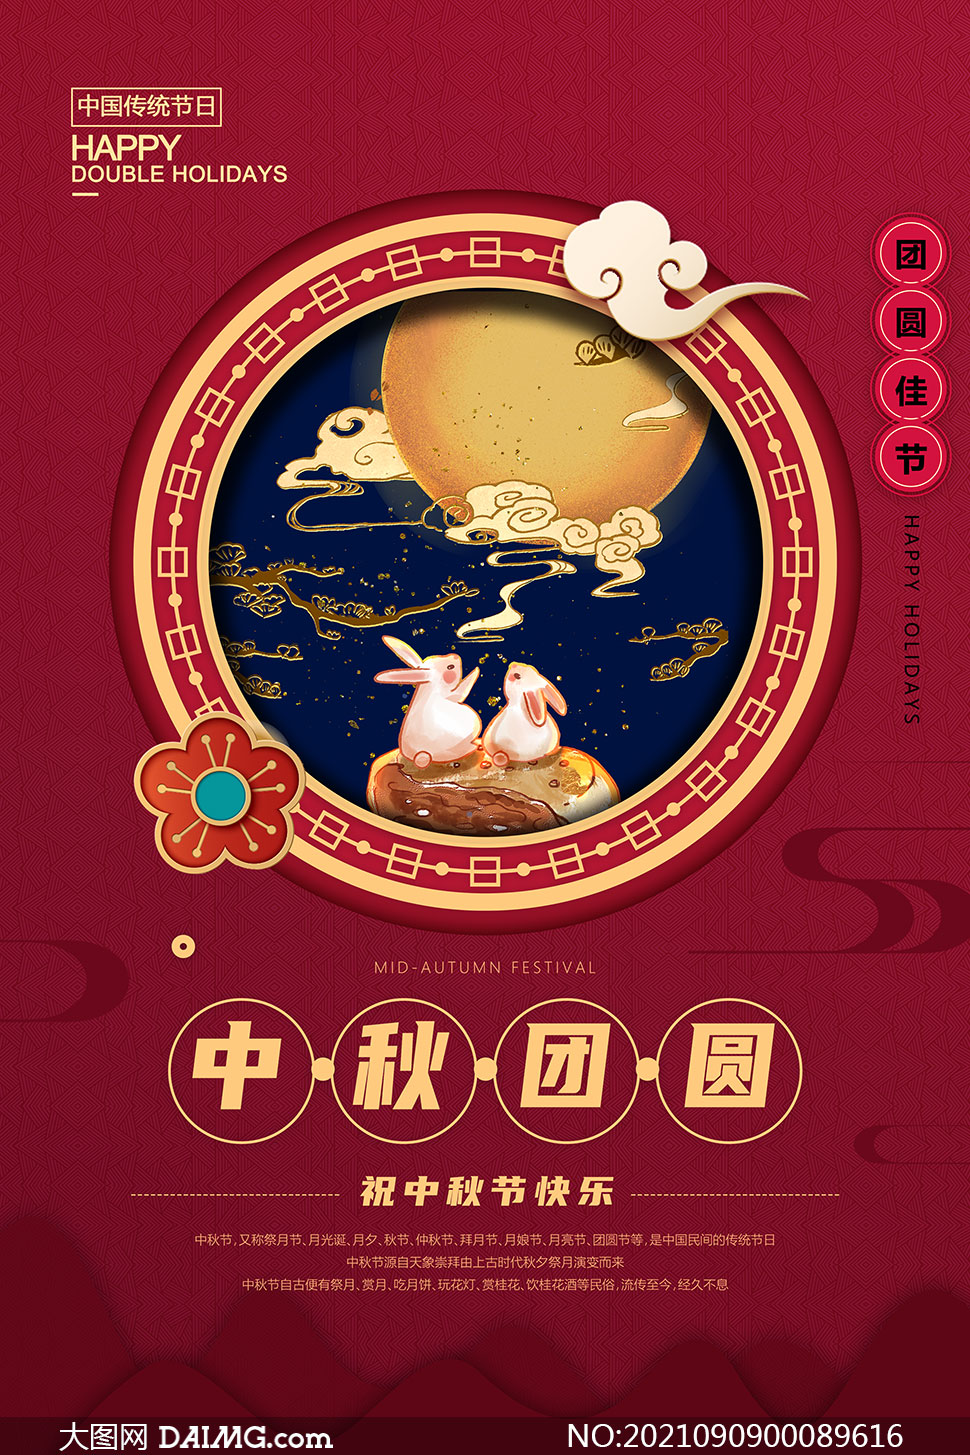 中式主题中秋节活动宣传单设计psd素材